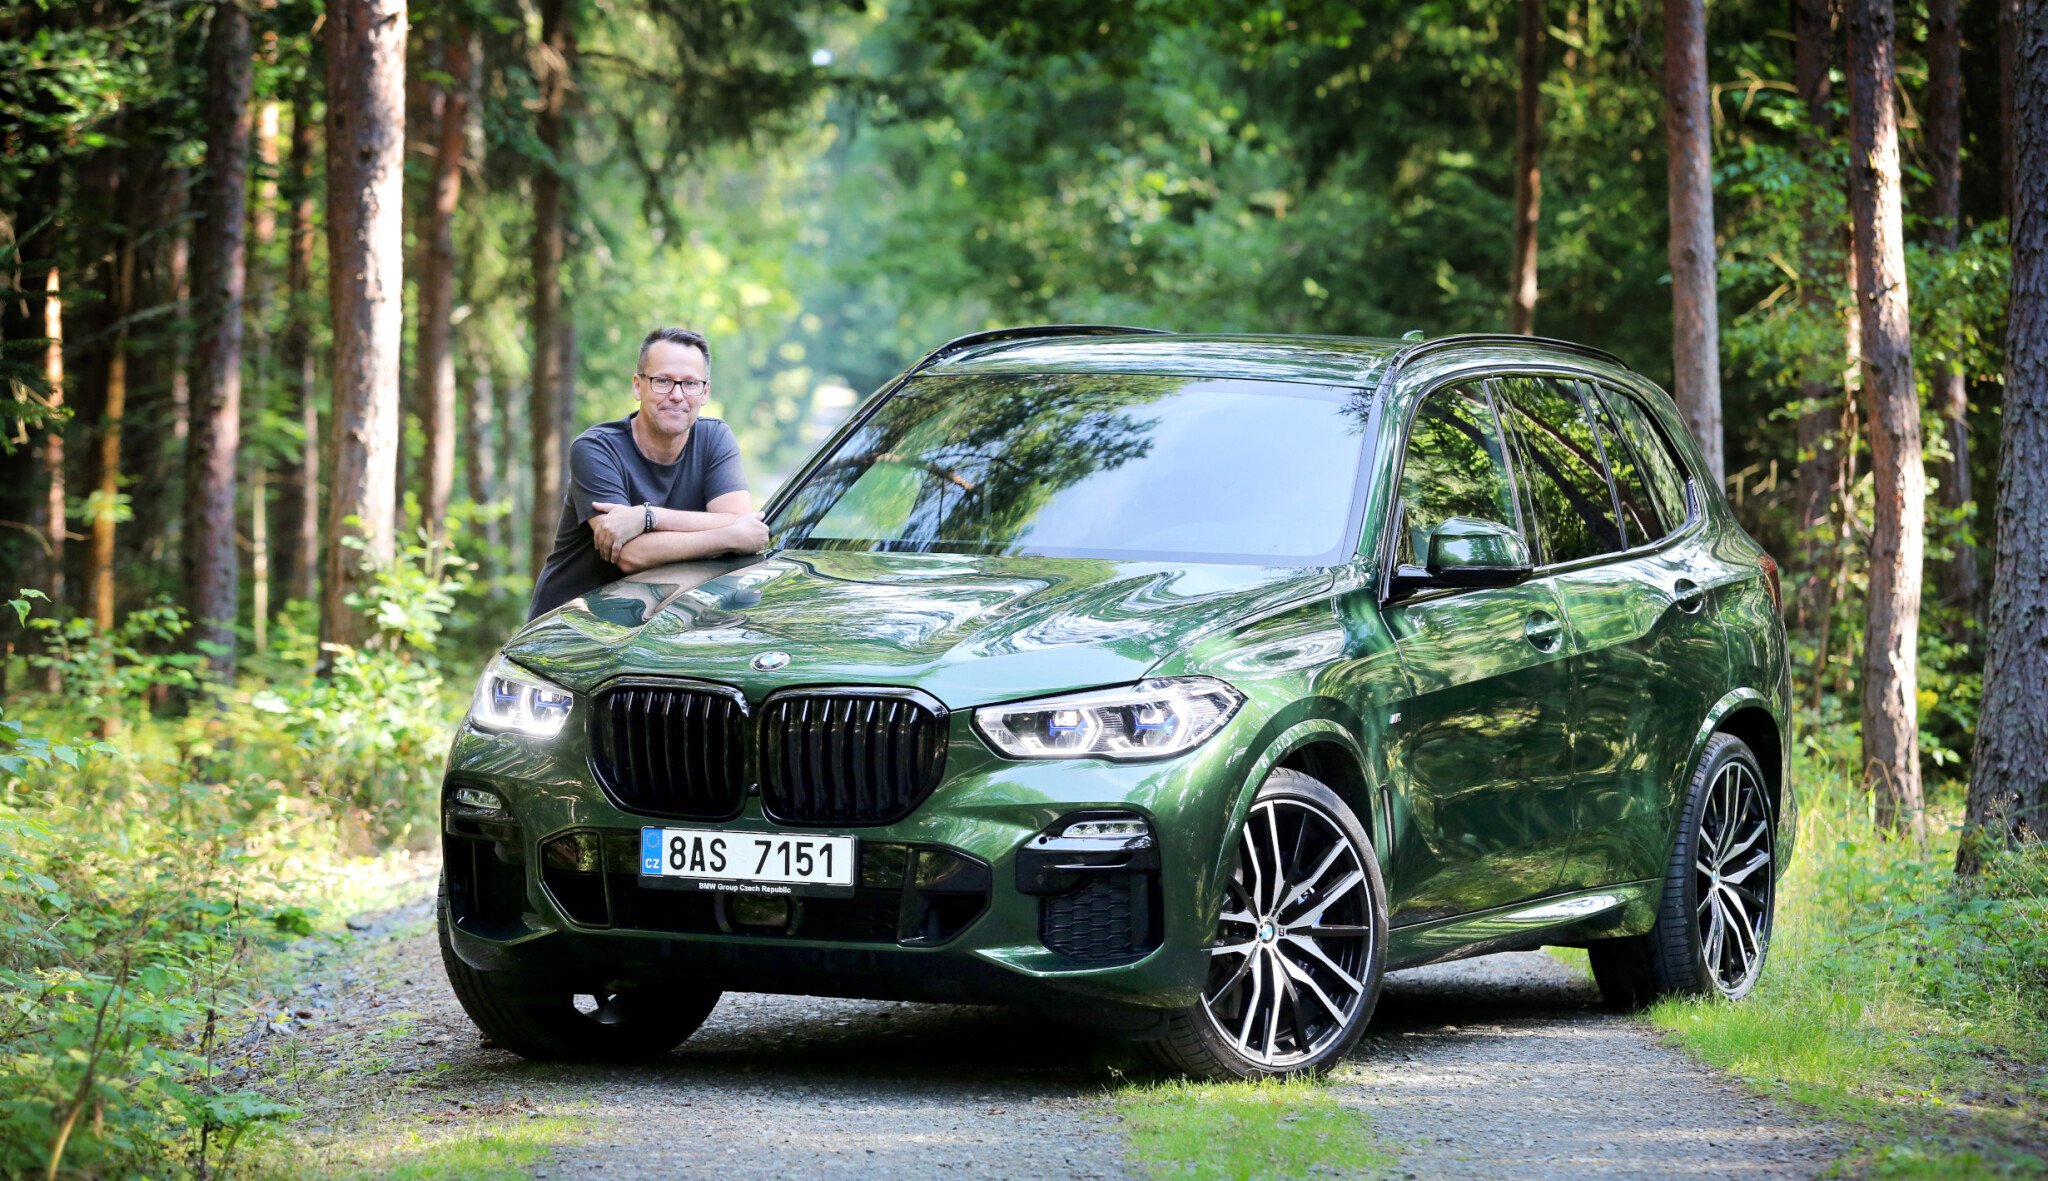 Šedesát odstínů lesa a exkluzivní radost z jízdy. BMW nabízí barvy, které podtrhnou luxus